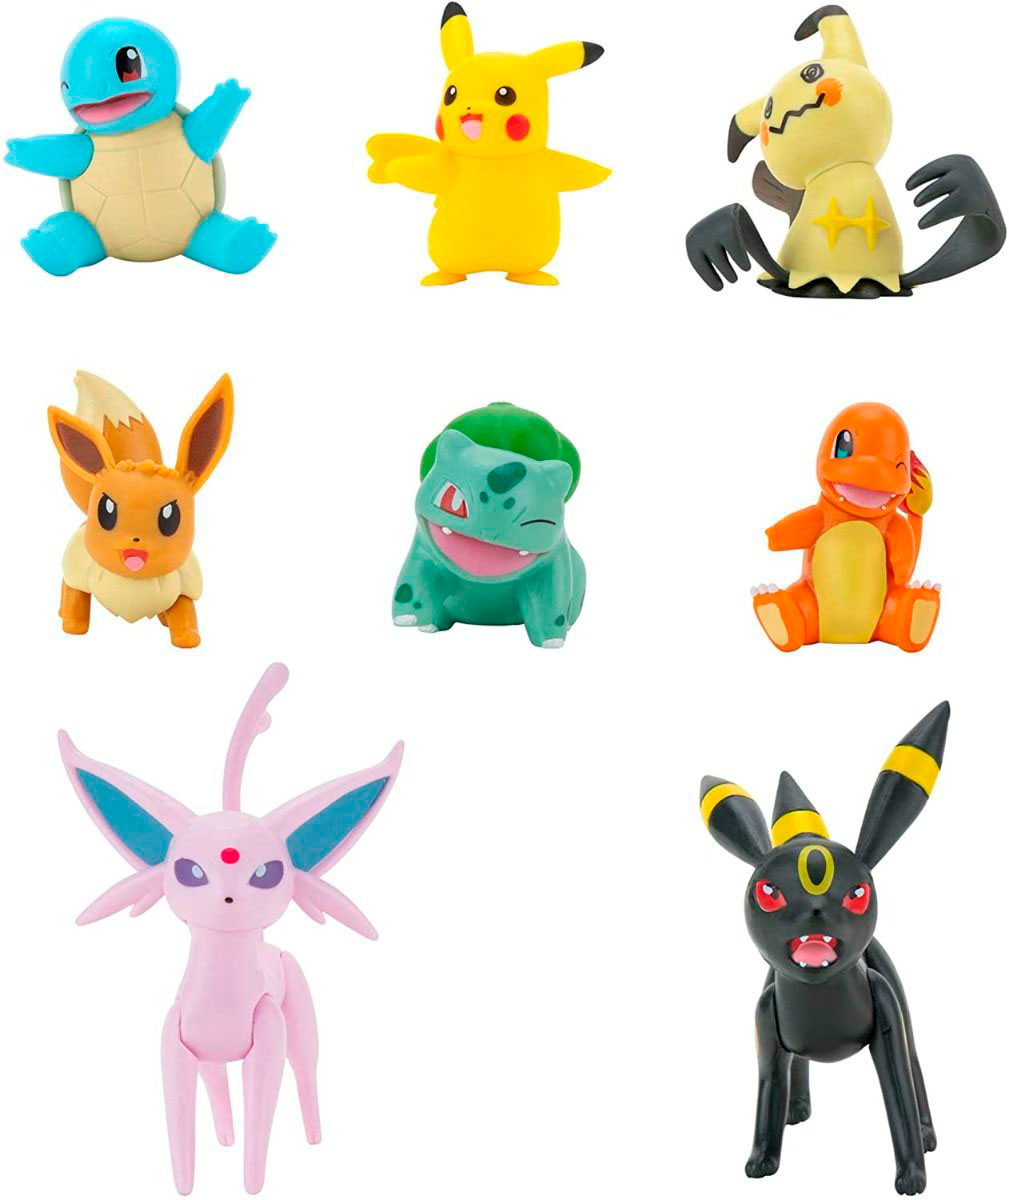 Pokemon - Gen 5 Starters Battle Ready Figure Multi-Pack - Toys & Gadgets -  ZiNG Pop Culture